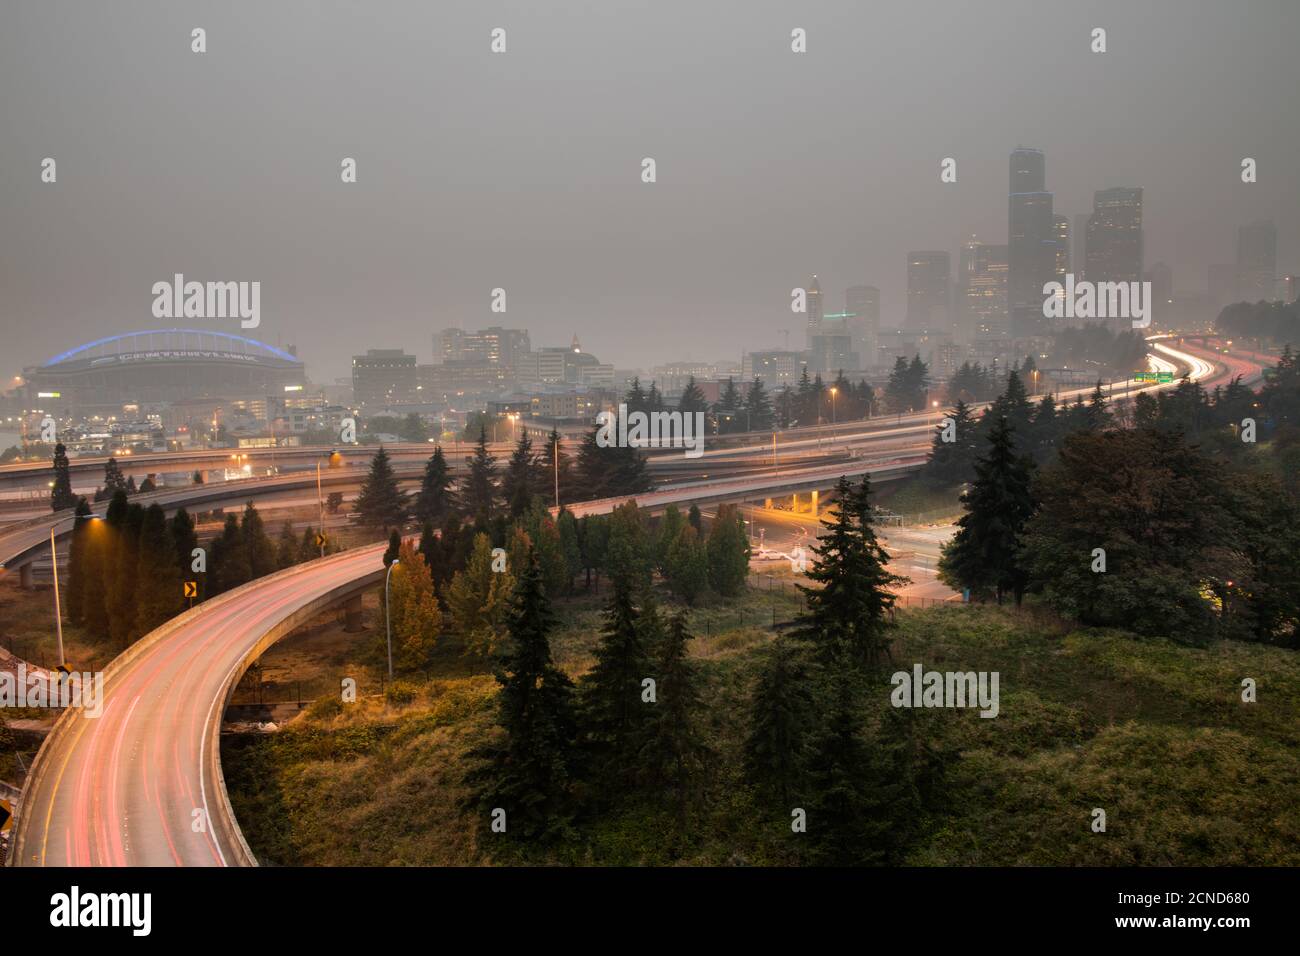 Le soir, la ville de Seattle est entourée de fumée et de feux de forêt dans les États de Washington et de l'Oregon. Septembre 2020 Banque D'Images